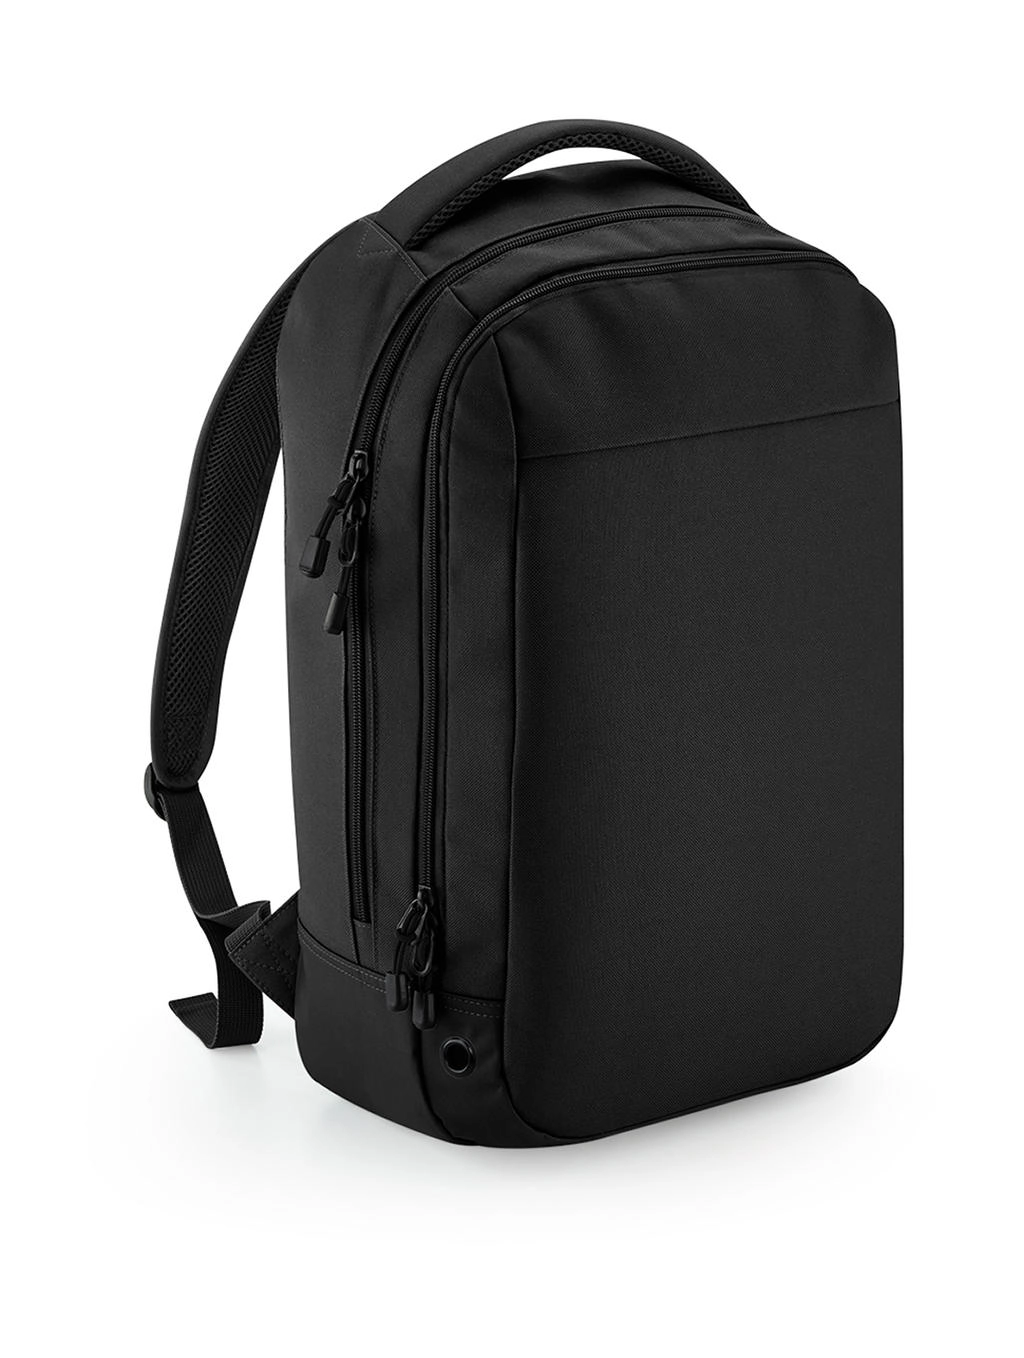 Athleisure Sports Backpack zum Besticken und Bedrucken in der Farbe Black/Black mit Ihren Logo, Schriftzug oder Motiv.